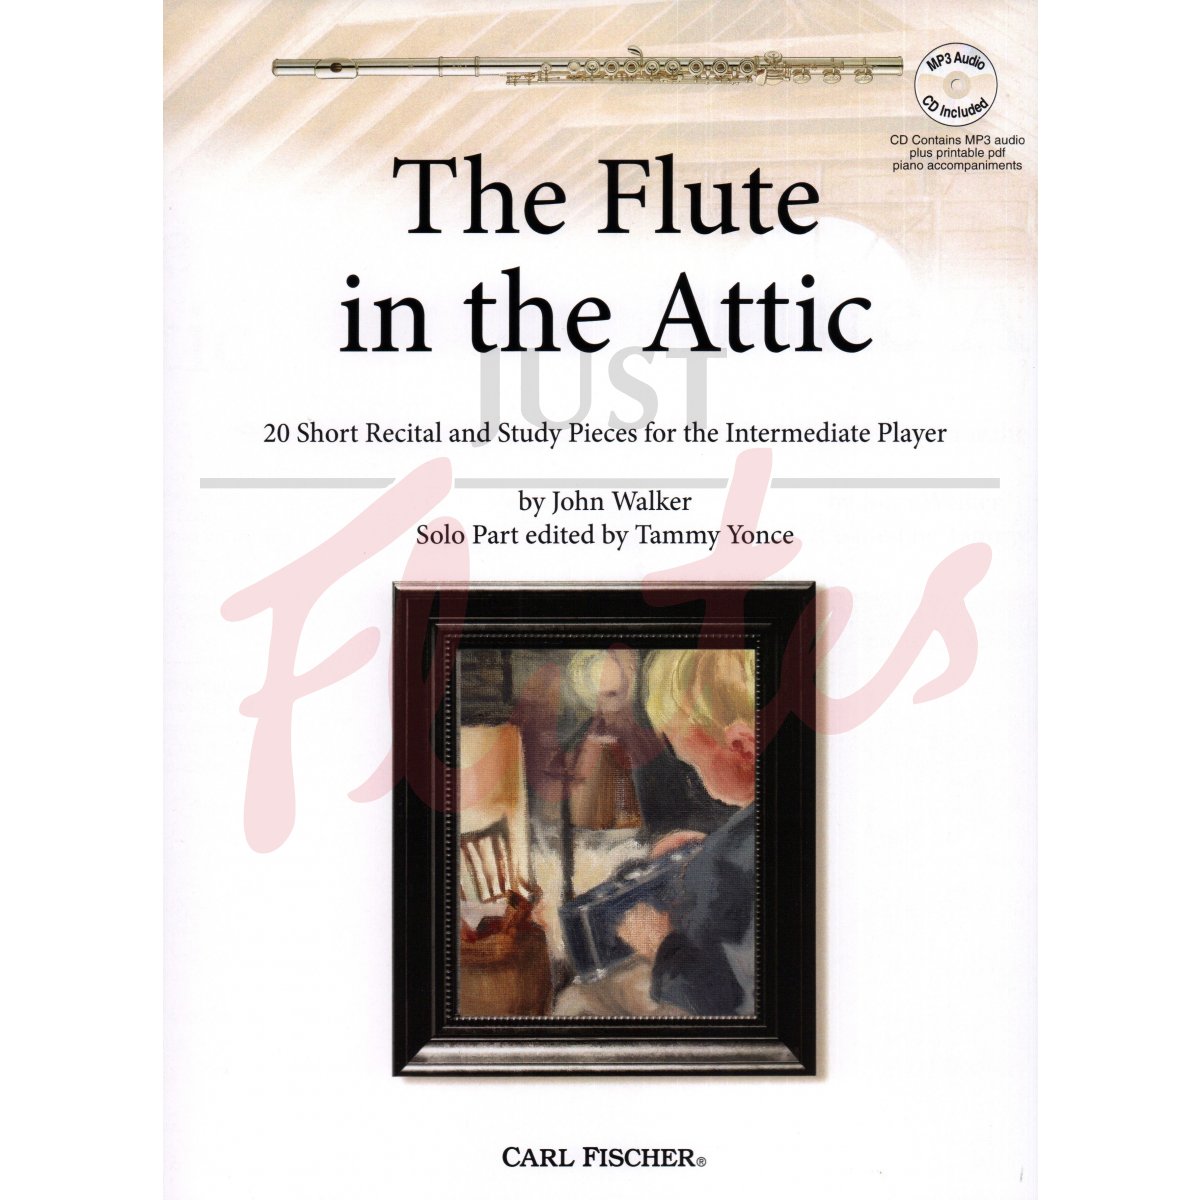 The Flute in the Attic